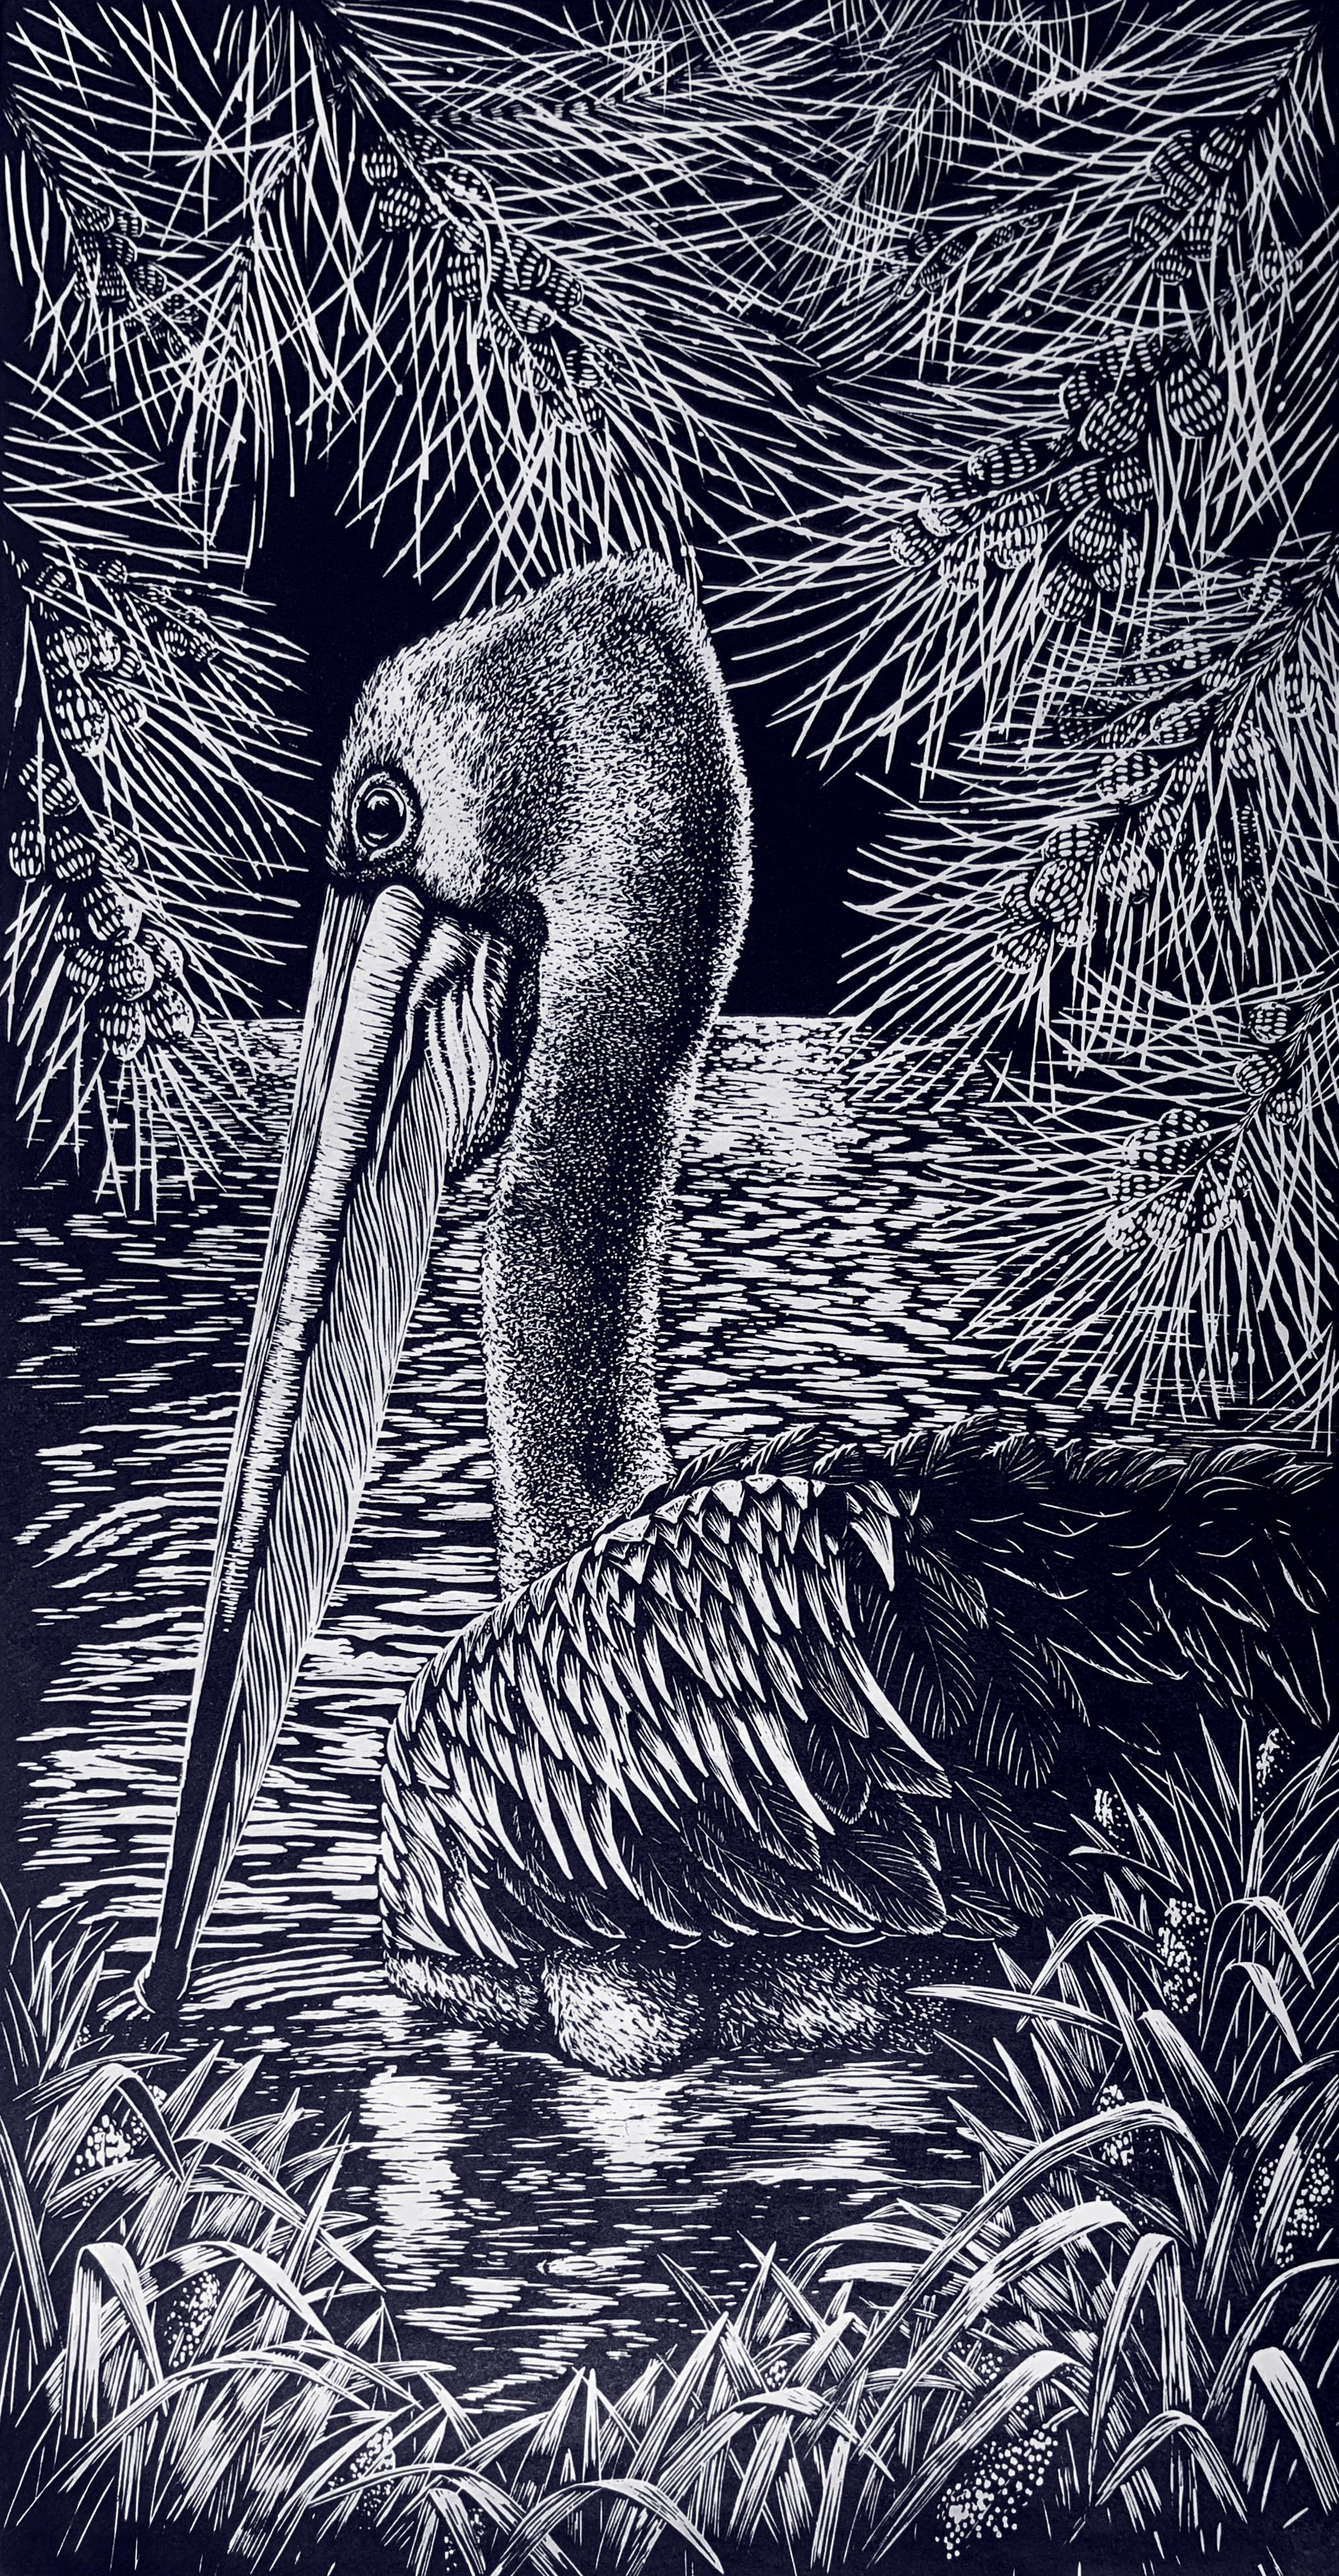 Shallow Waters II - Relief Linocut Print of Australian Pelican in a Waterhole - Art by Peta West